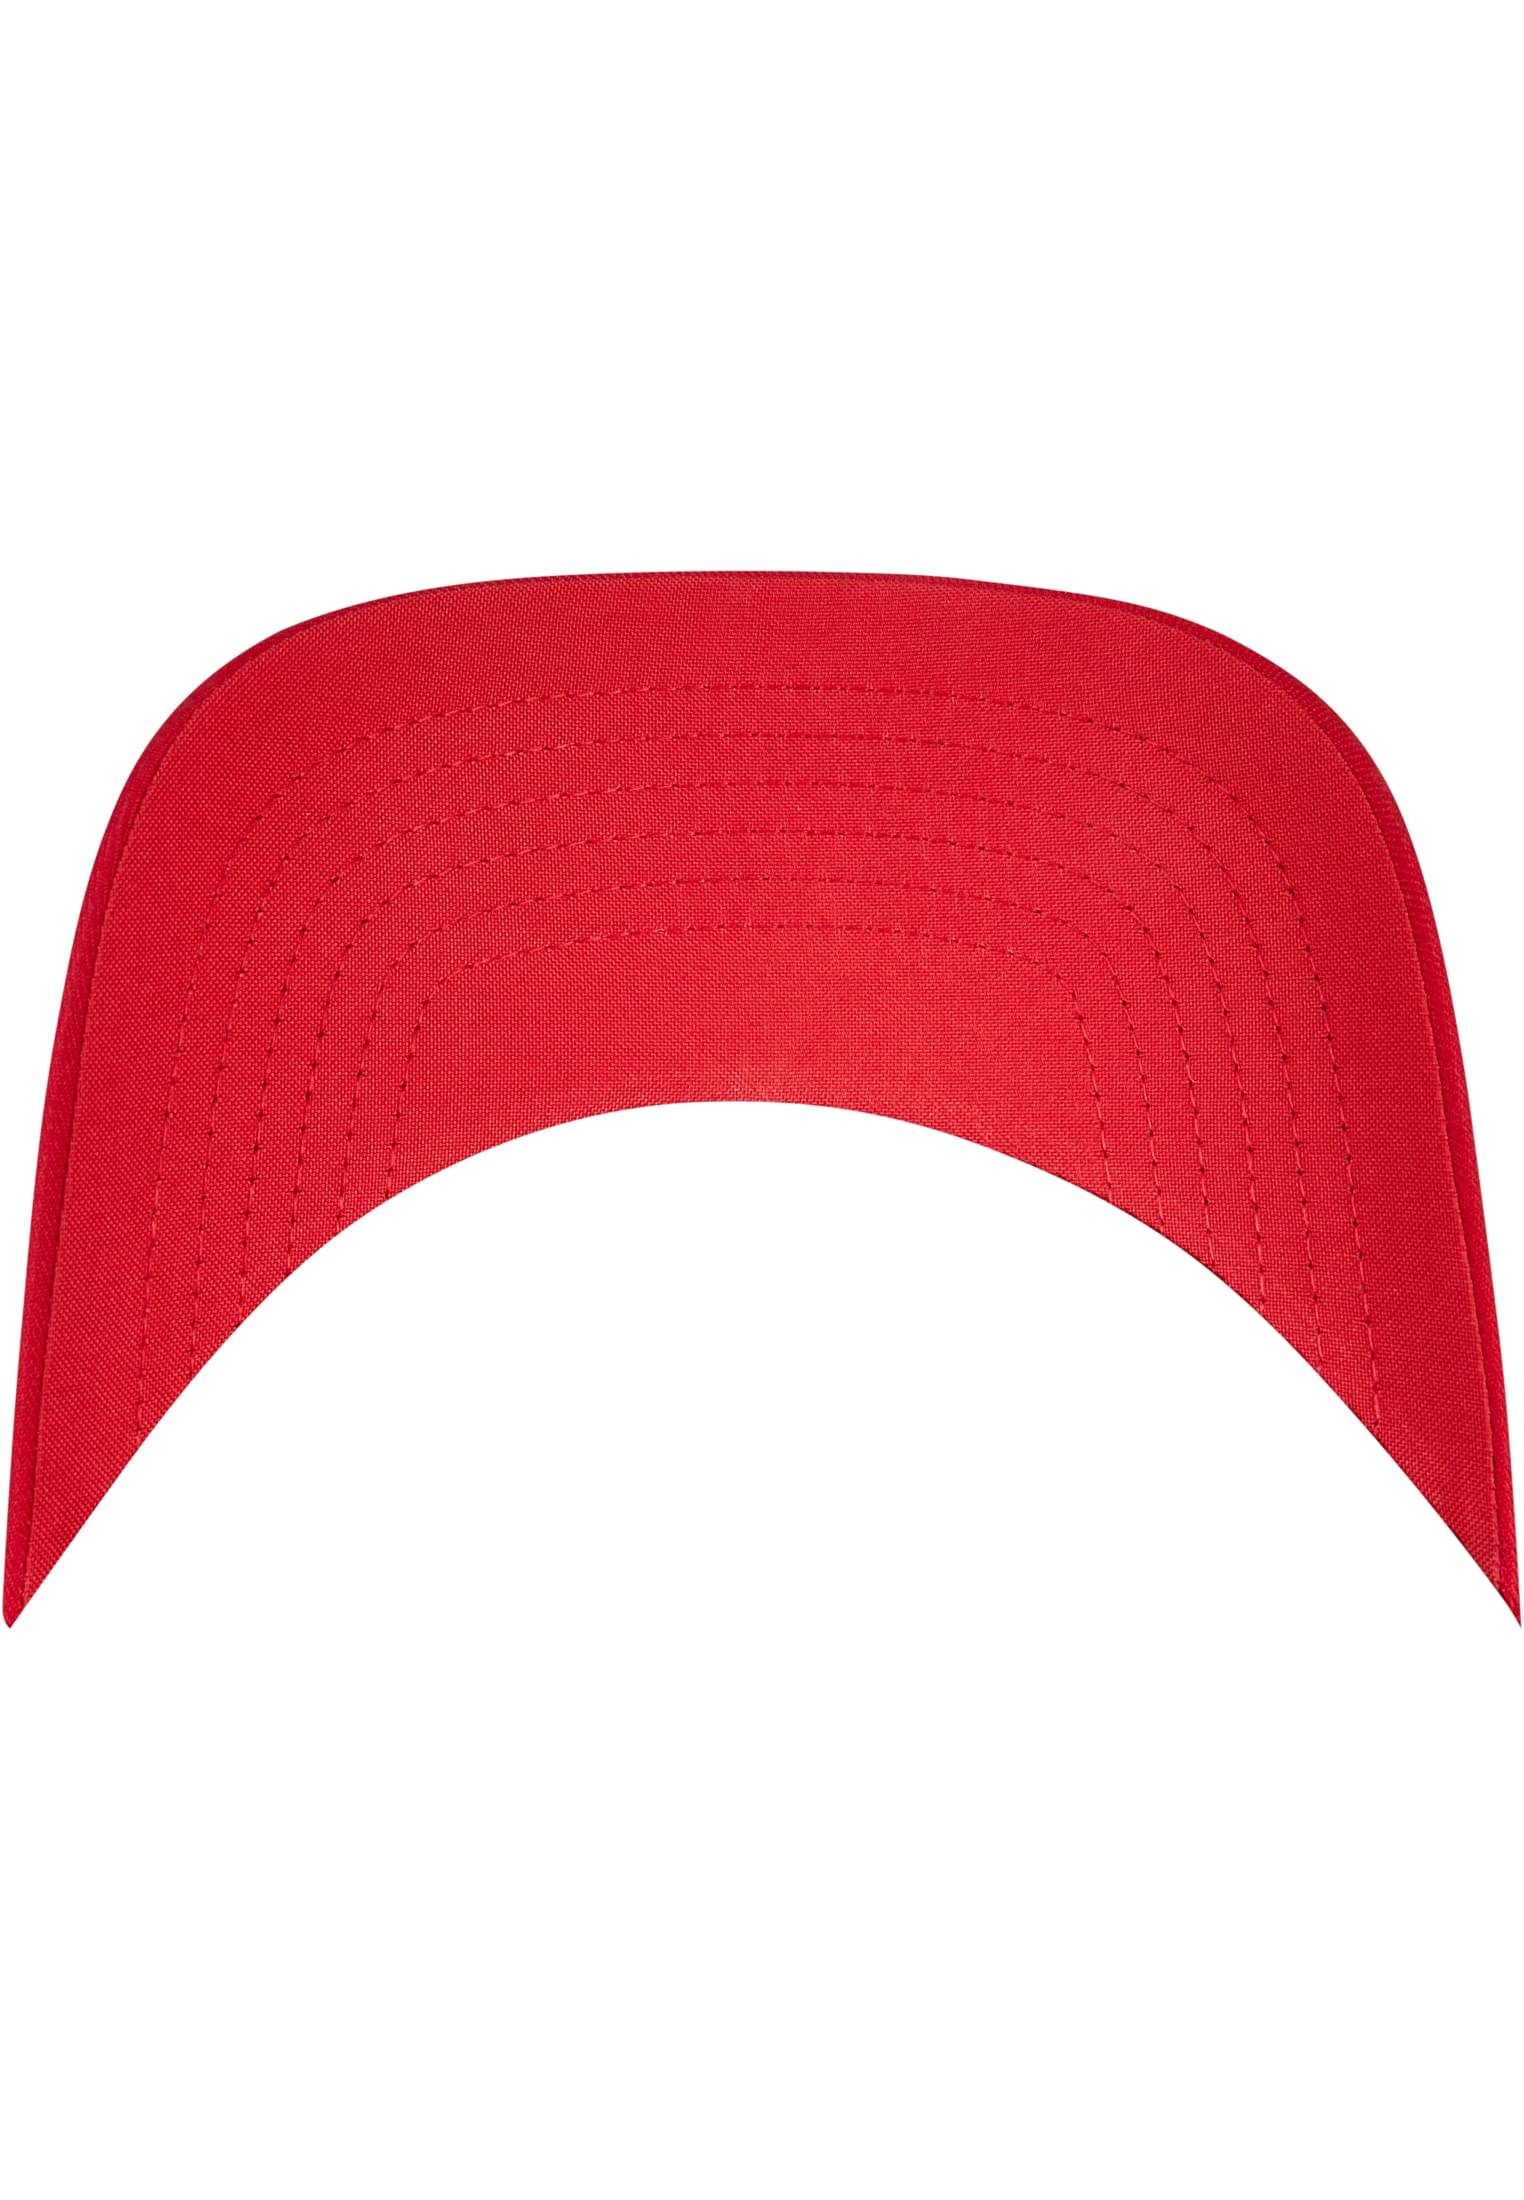 Flexfit Flex red CAP Cap Accessoires NU® FLEXFIT